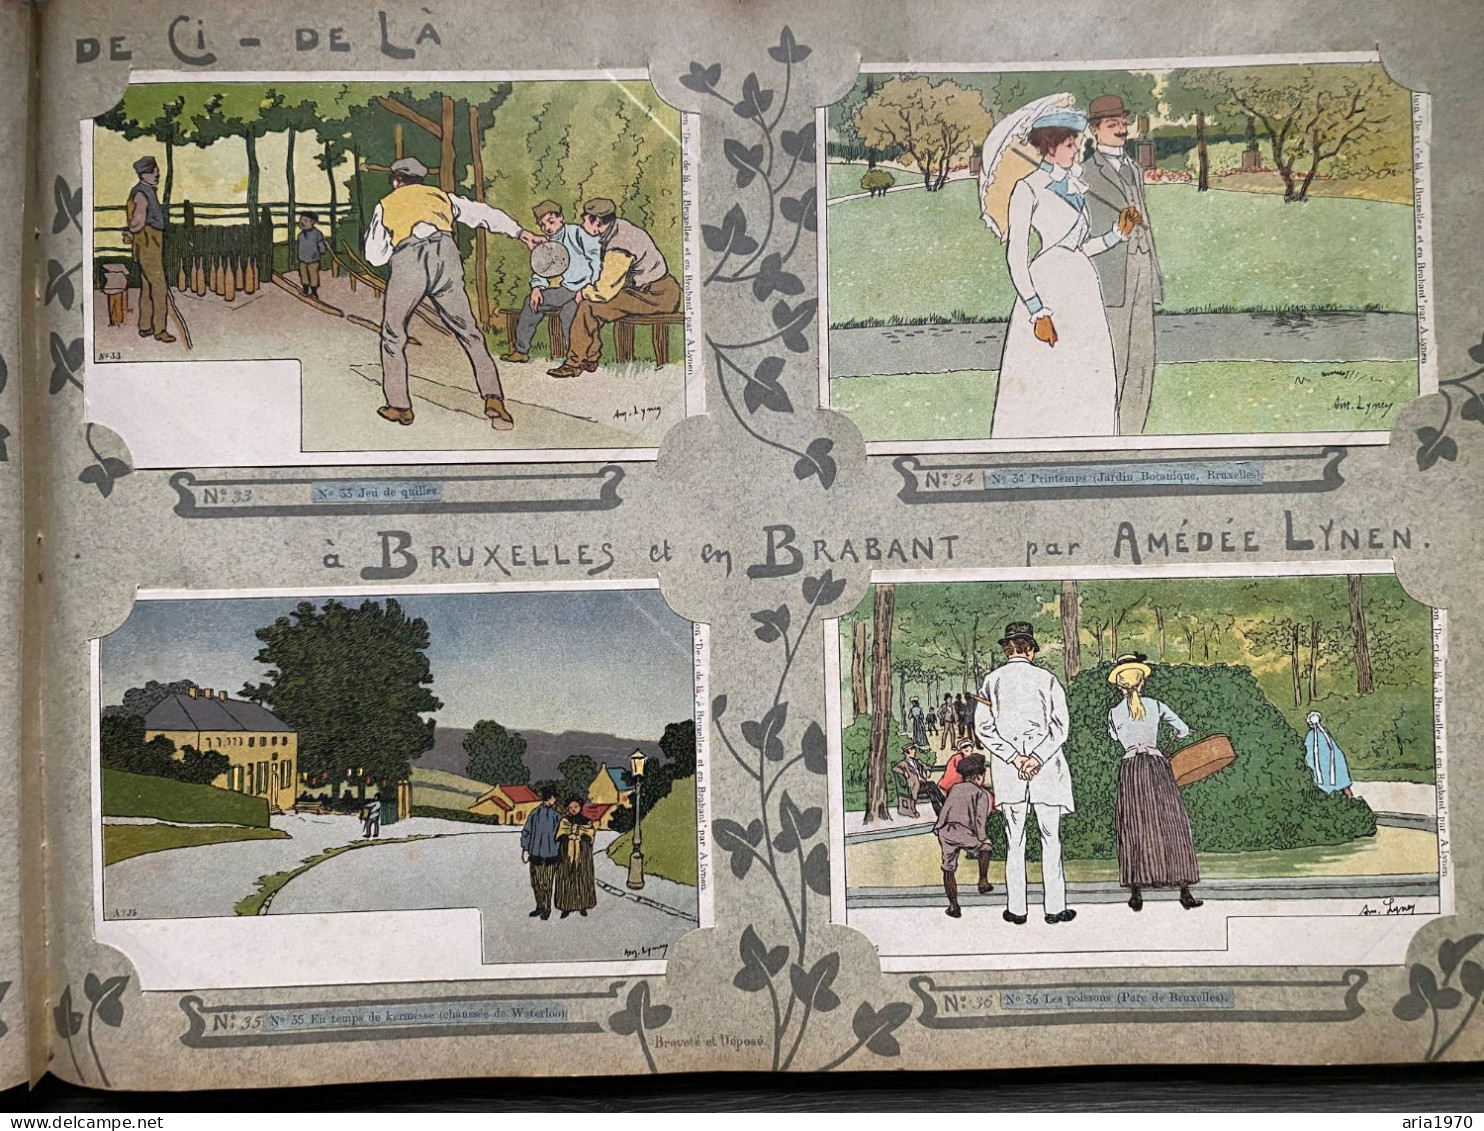 Illustrateur Amédée Lynen album complet 200 Cartes postales en Litho Bruxelles et Brabant   de çi - de là